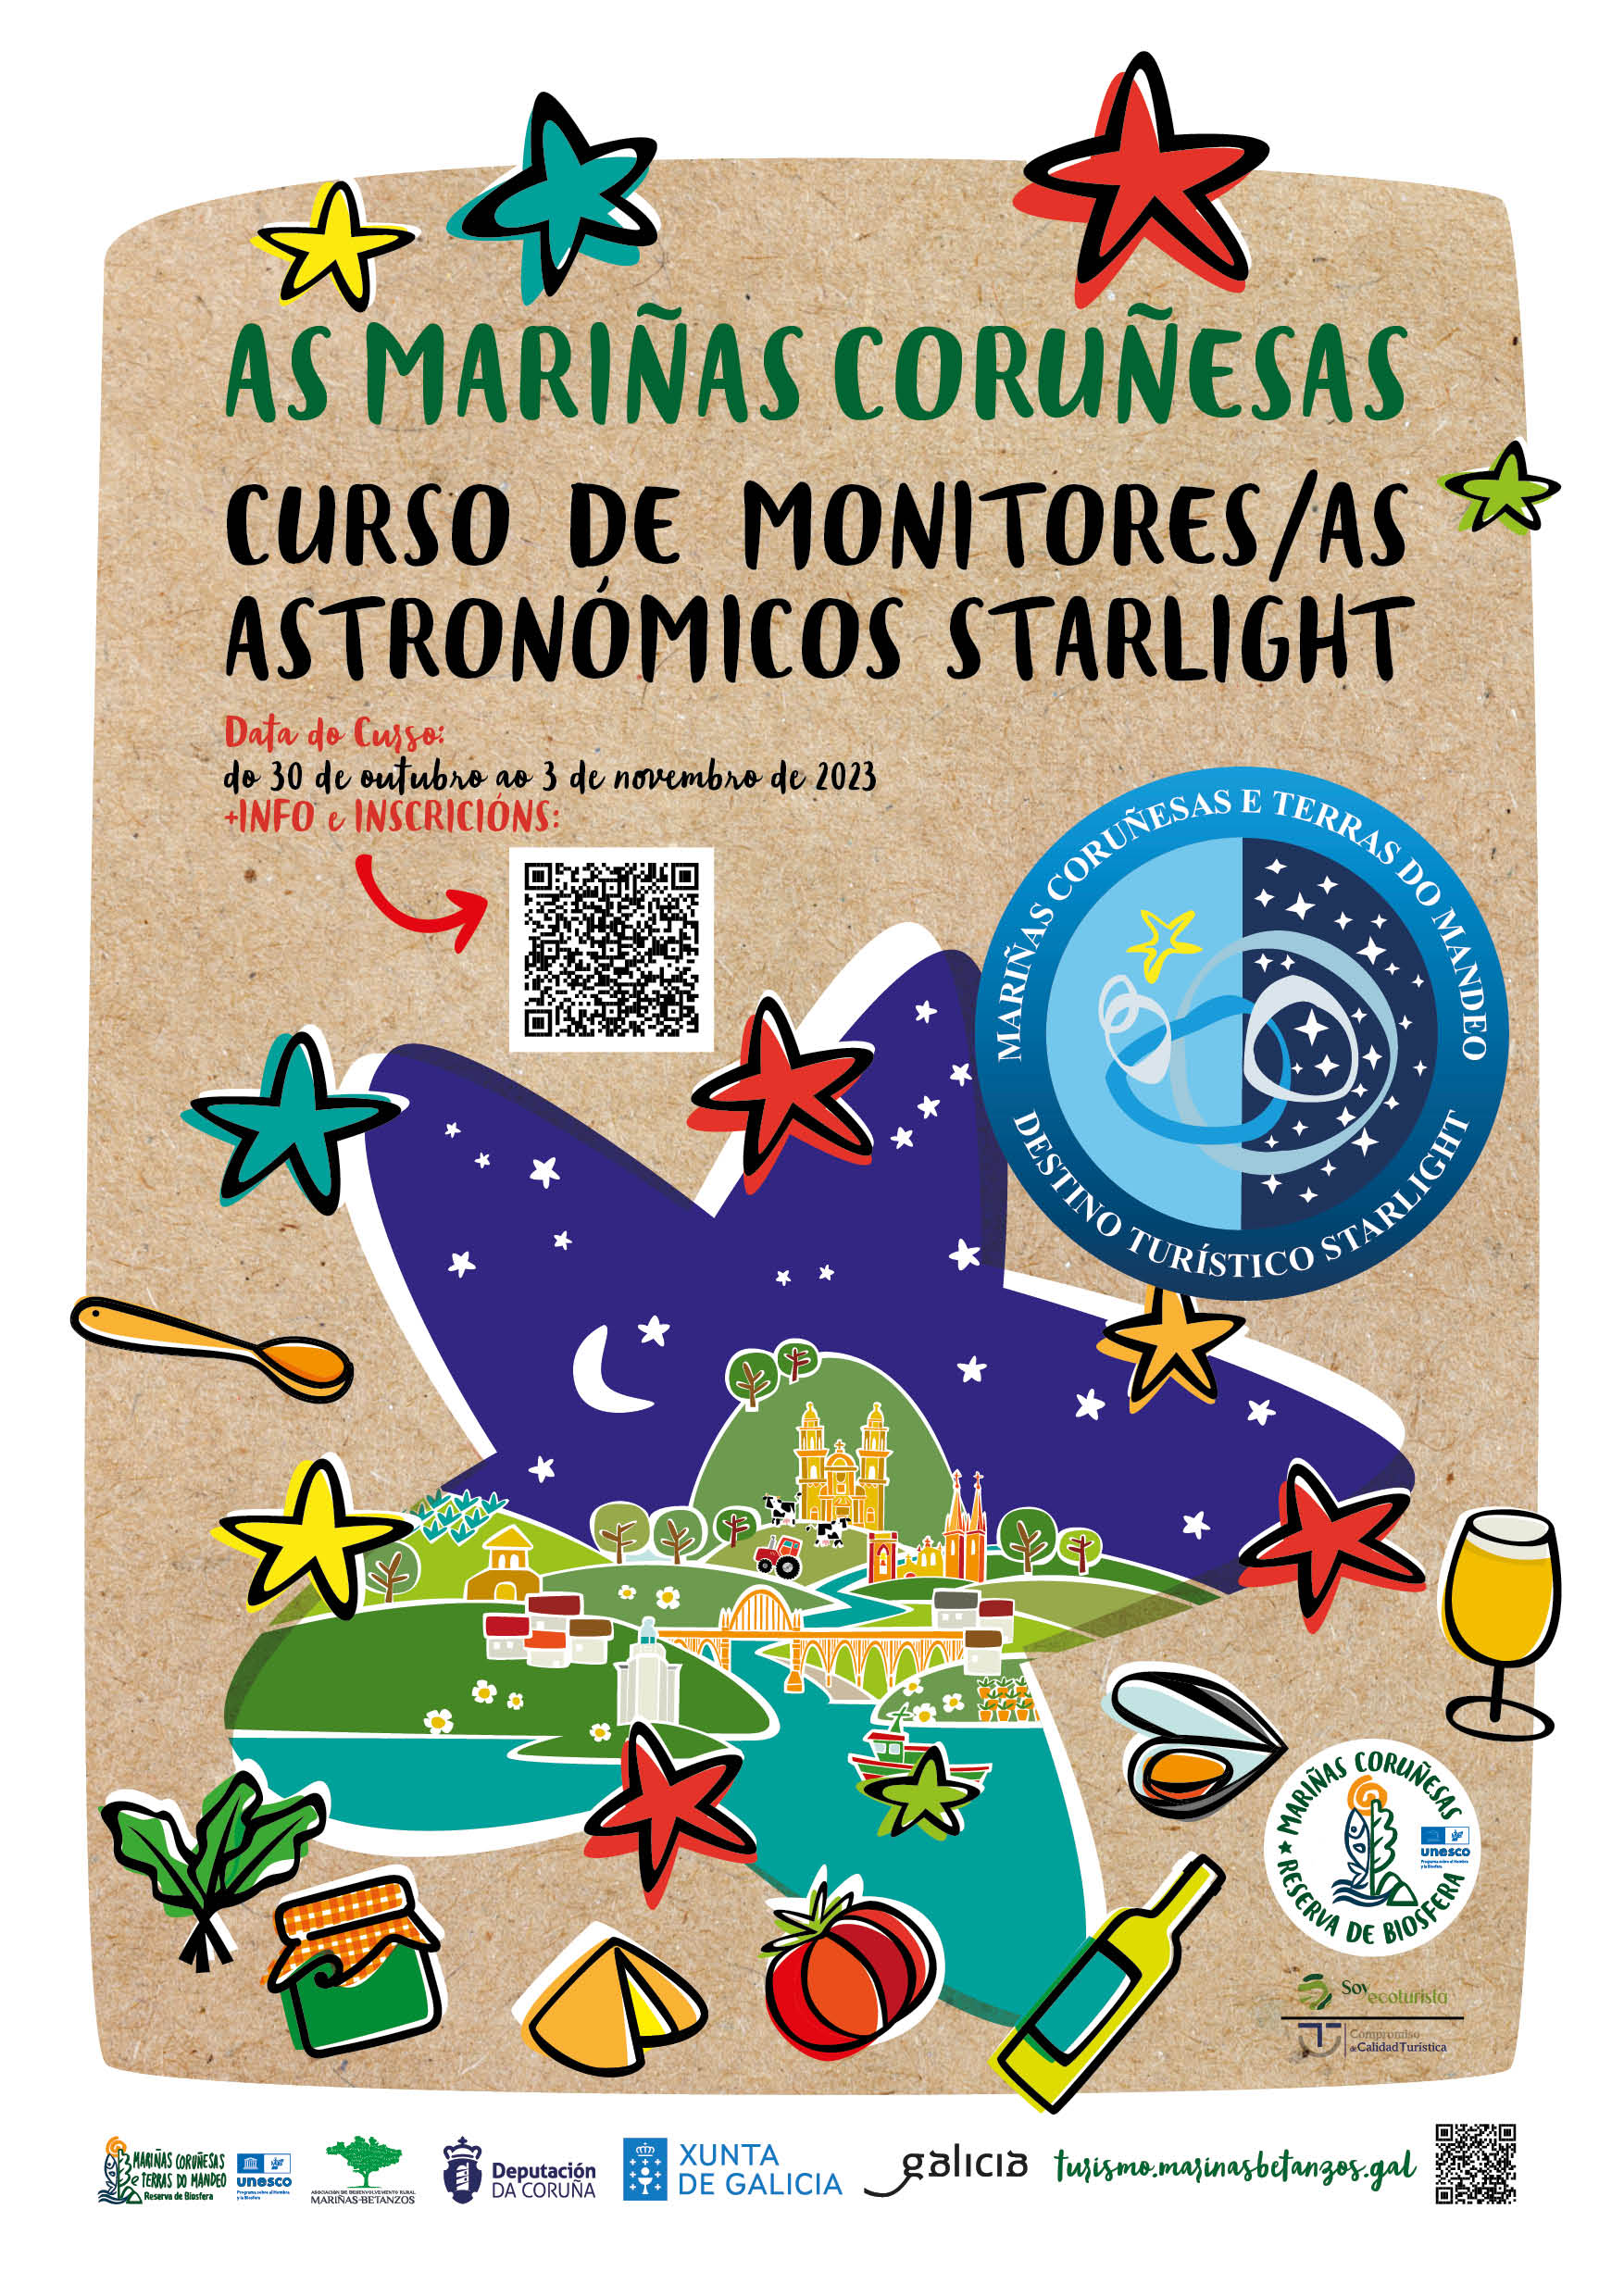 Curso de Monitores/as Astronómicos Starlight Mariñas Coruñesas